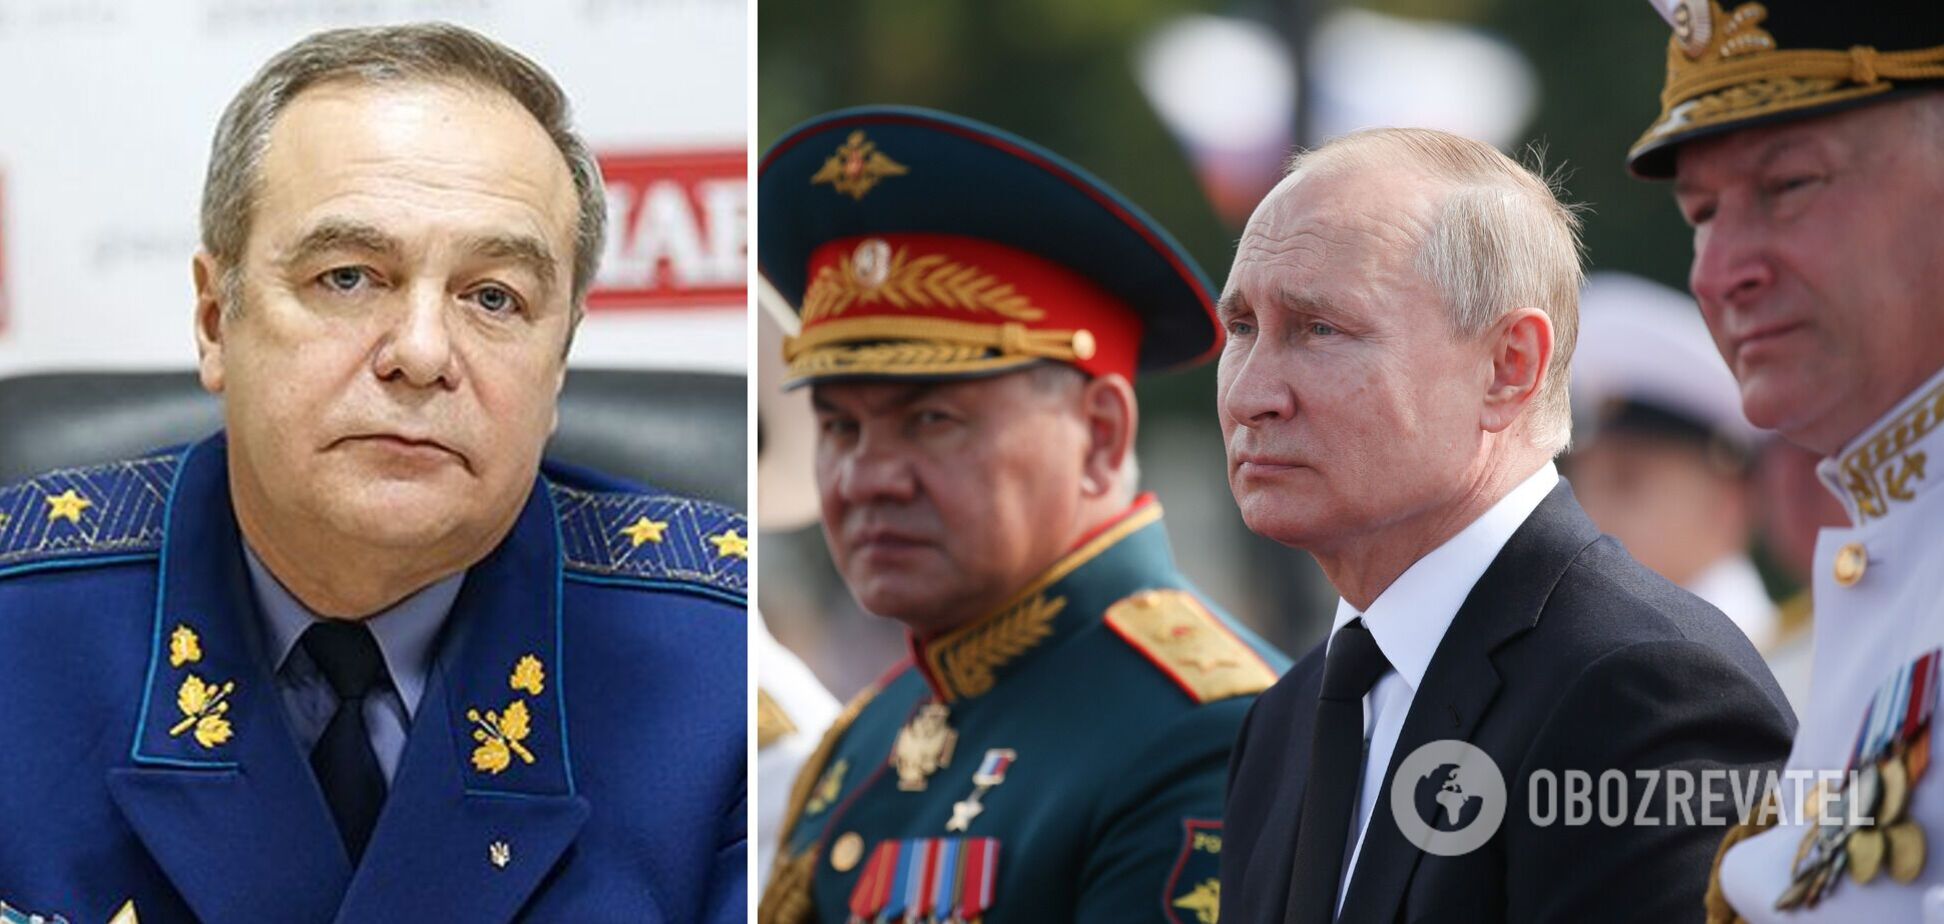 Путин отведет войска? Генерал ВСУ дал неожиданный прогноз относительно войны на Донбассе